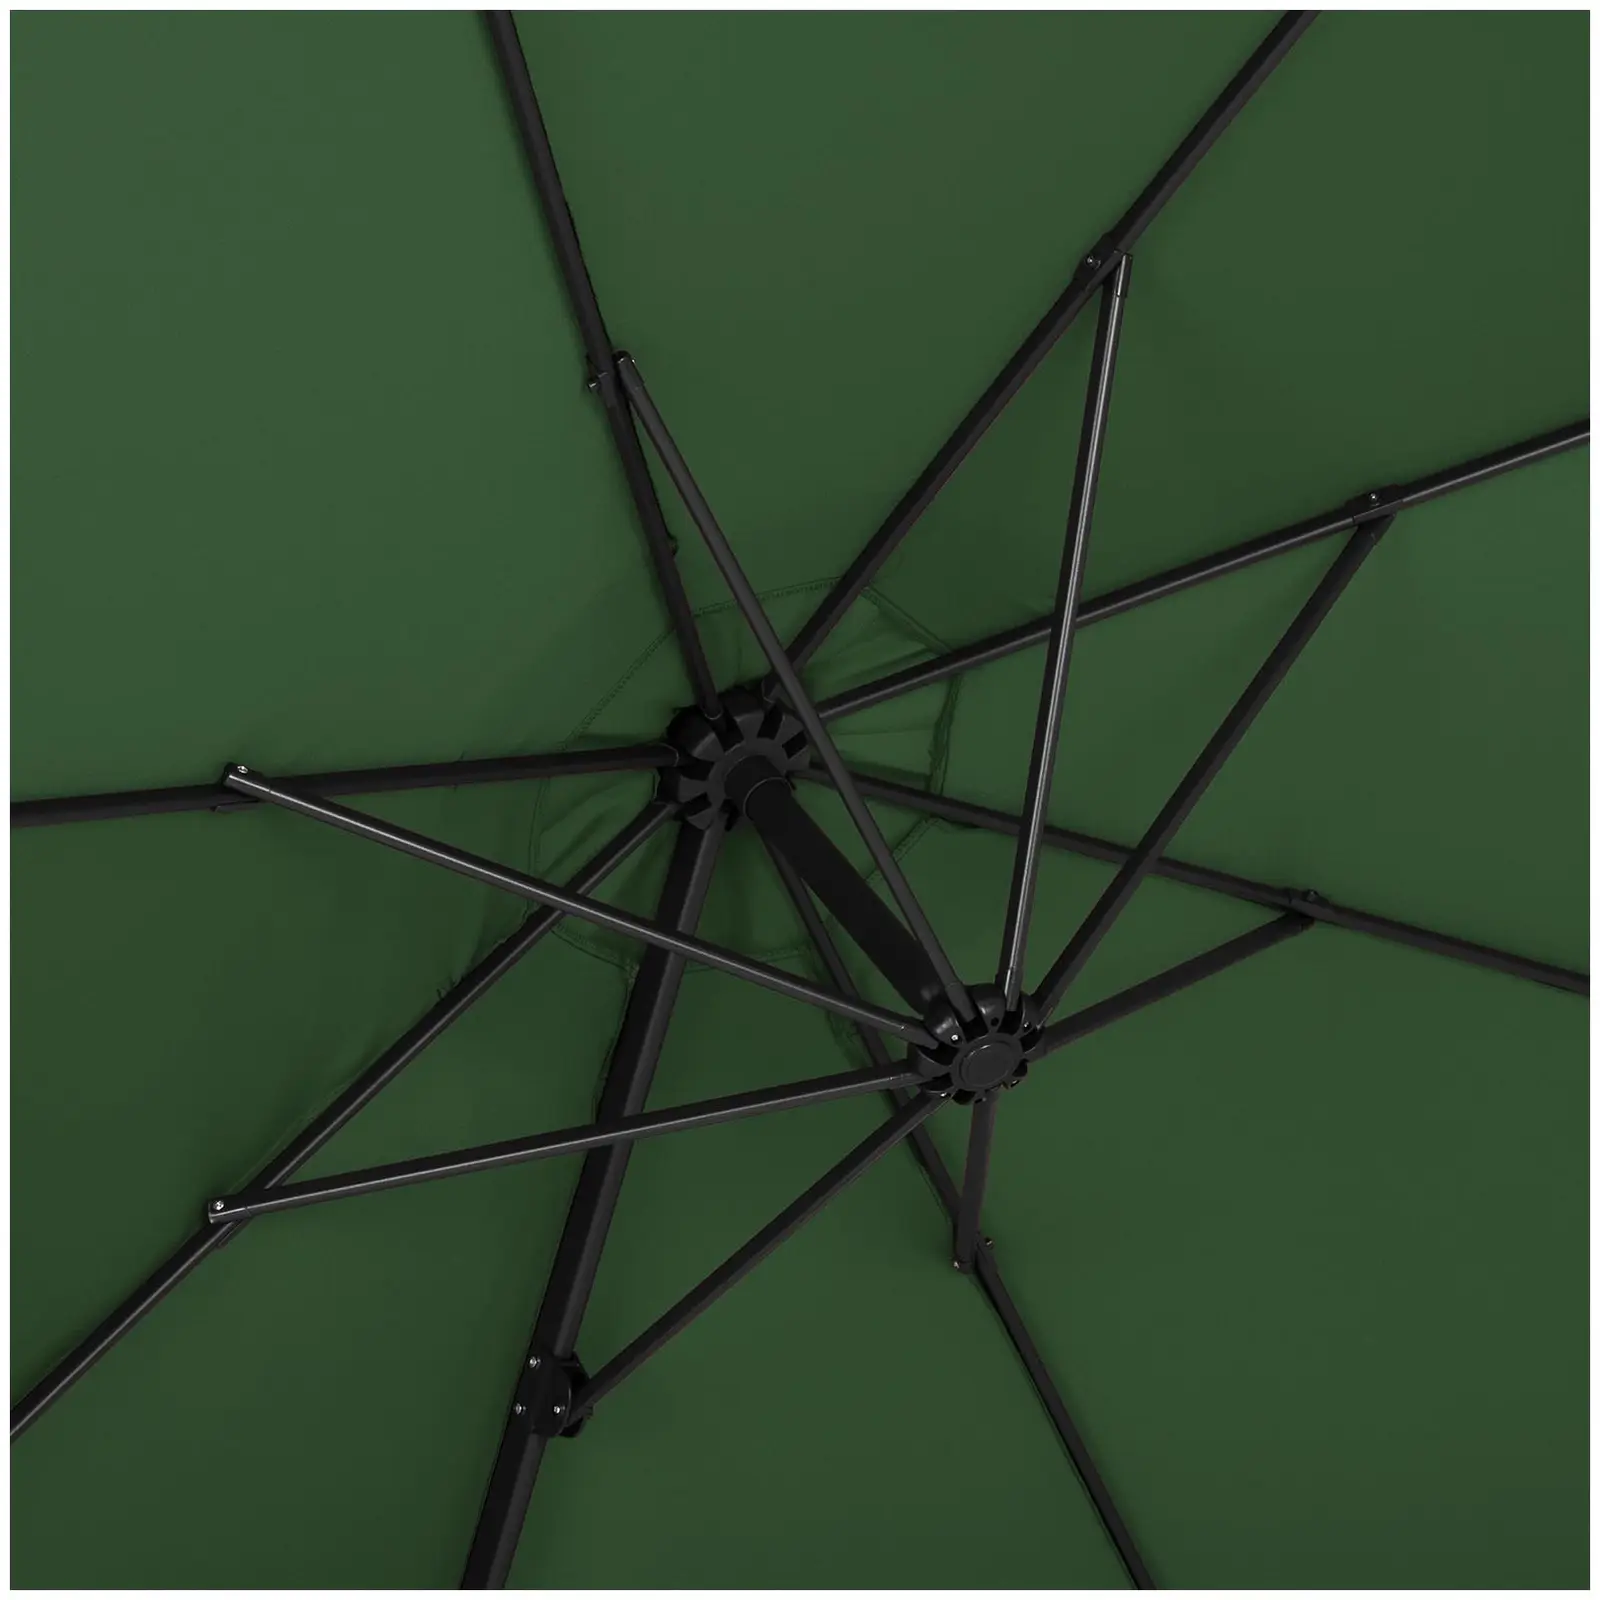 Factory second Garden umbrella - Green - Round - Ø 300 cm - Tiltable and rotatable